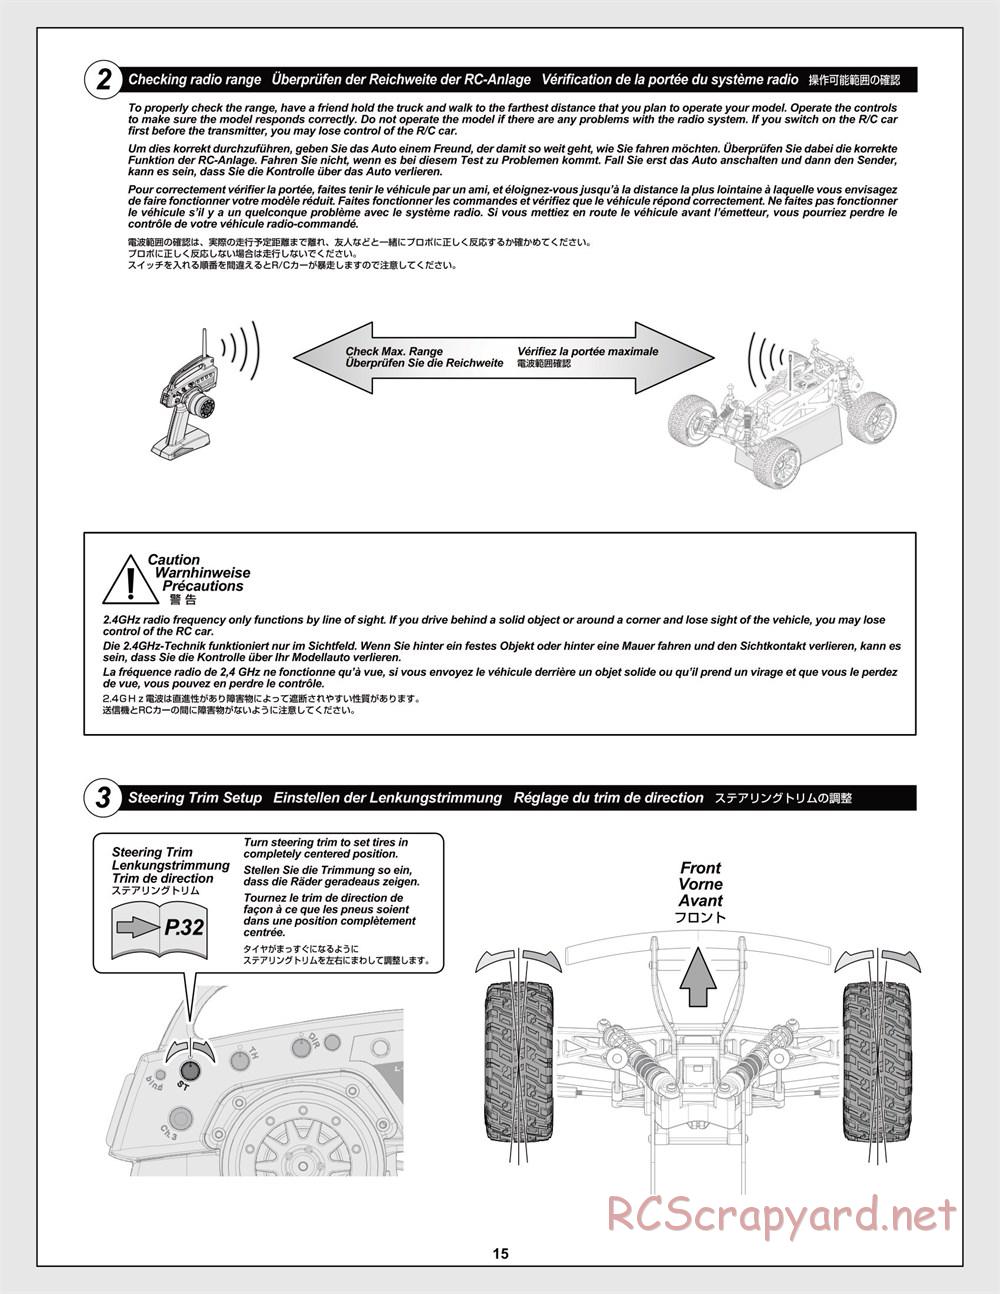 HPI - Jumpshot MT V2 - Manual - Page 15